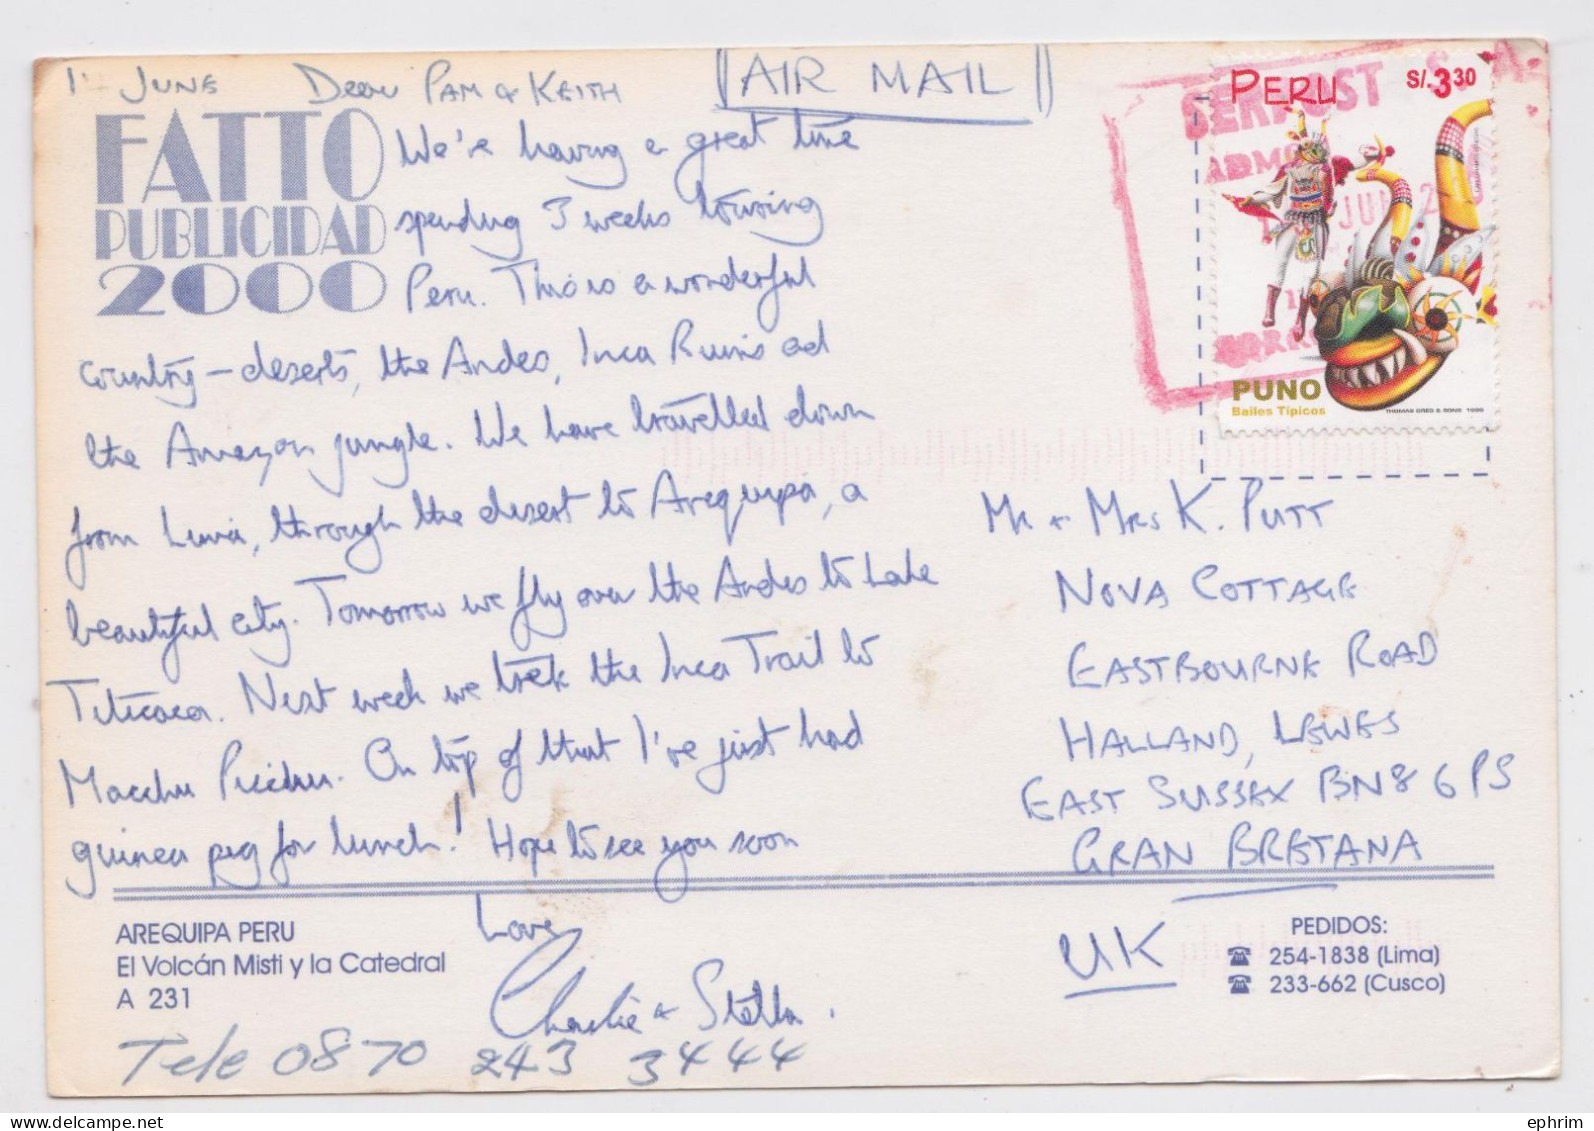 Pérou Peru Carte Postale Timbre Sello Bailes Tipicos Stamp Air Mail Postcard 2000 - Perú